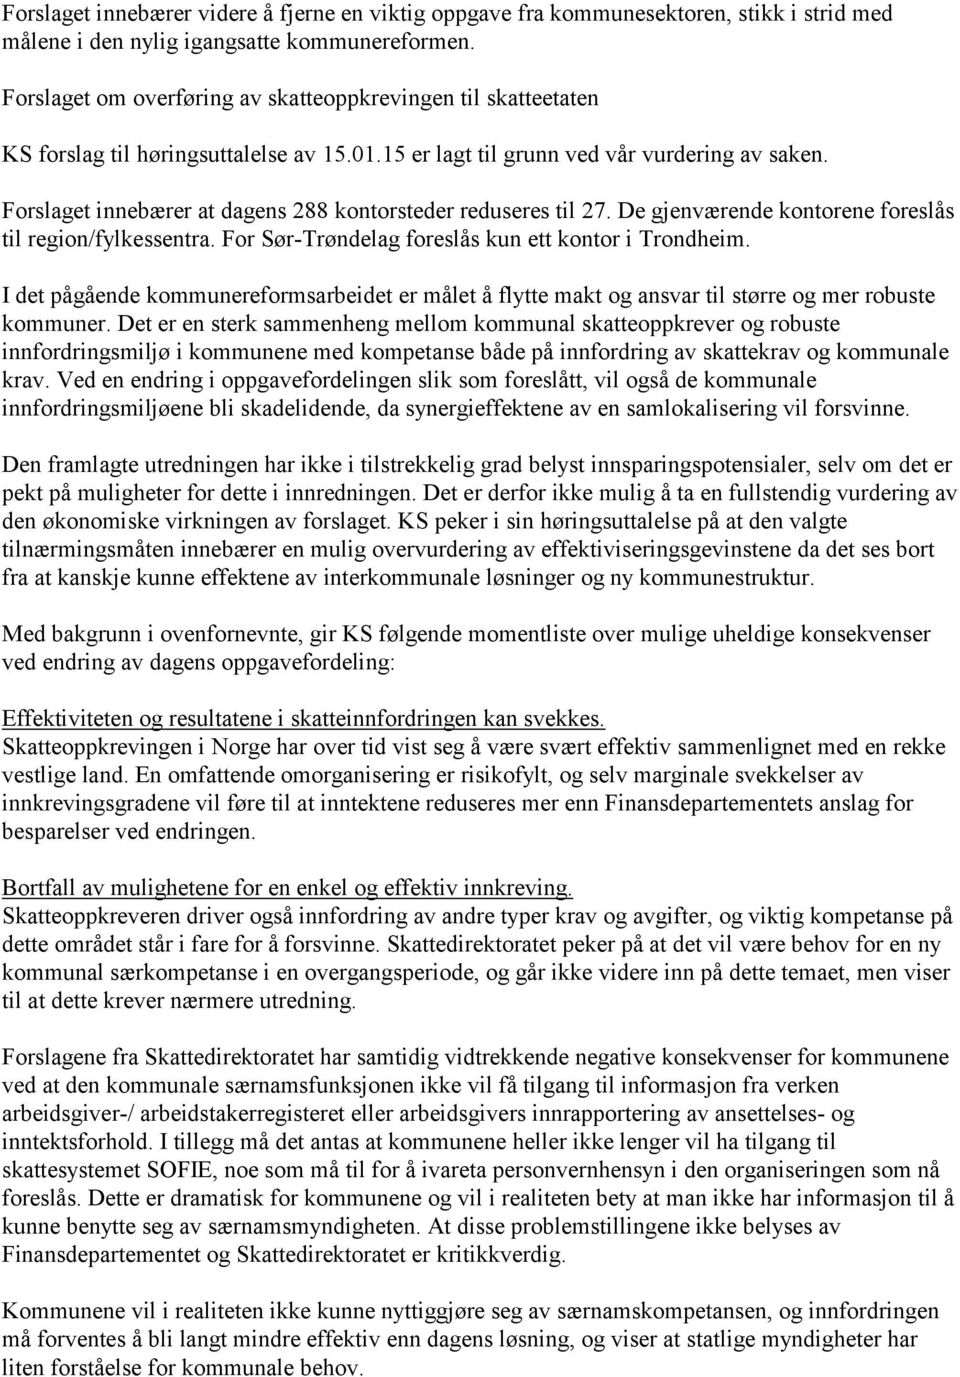 Forslaget innebærer at dagens 288 kontorsteder reduseres til 27. De gjenværende kontorene foreslås til region/fylkessentra. For Sør-Trøndelag foreslås kun ett kontor i Trondheim.